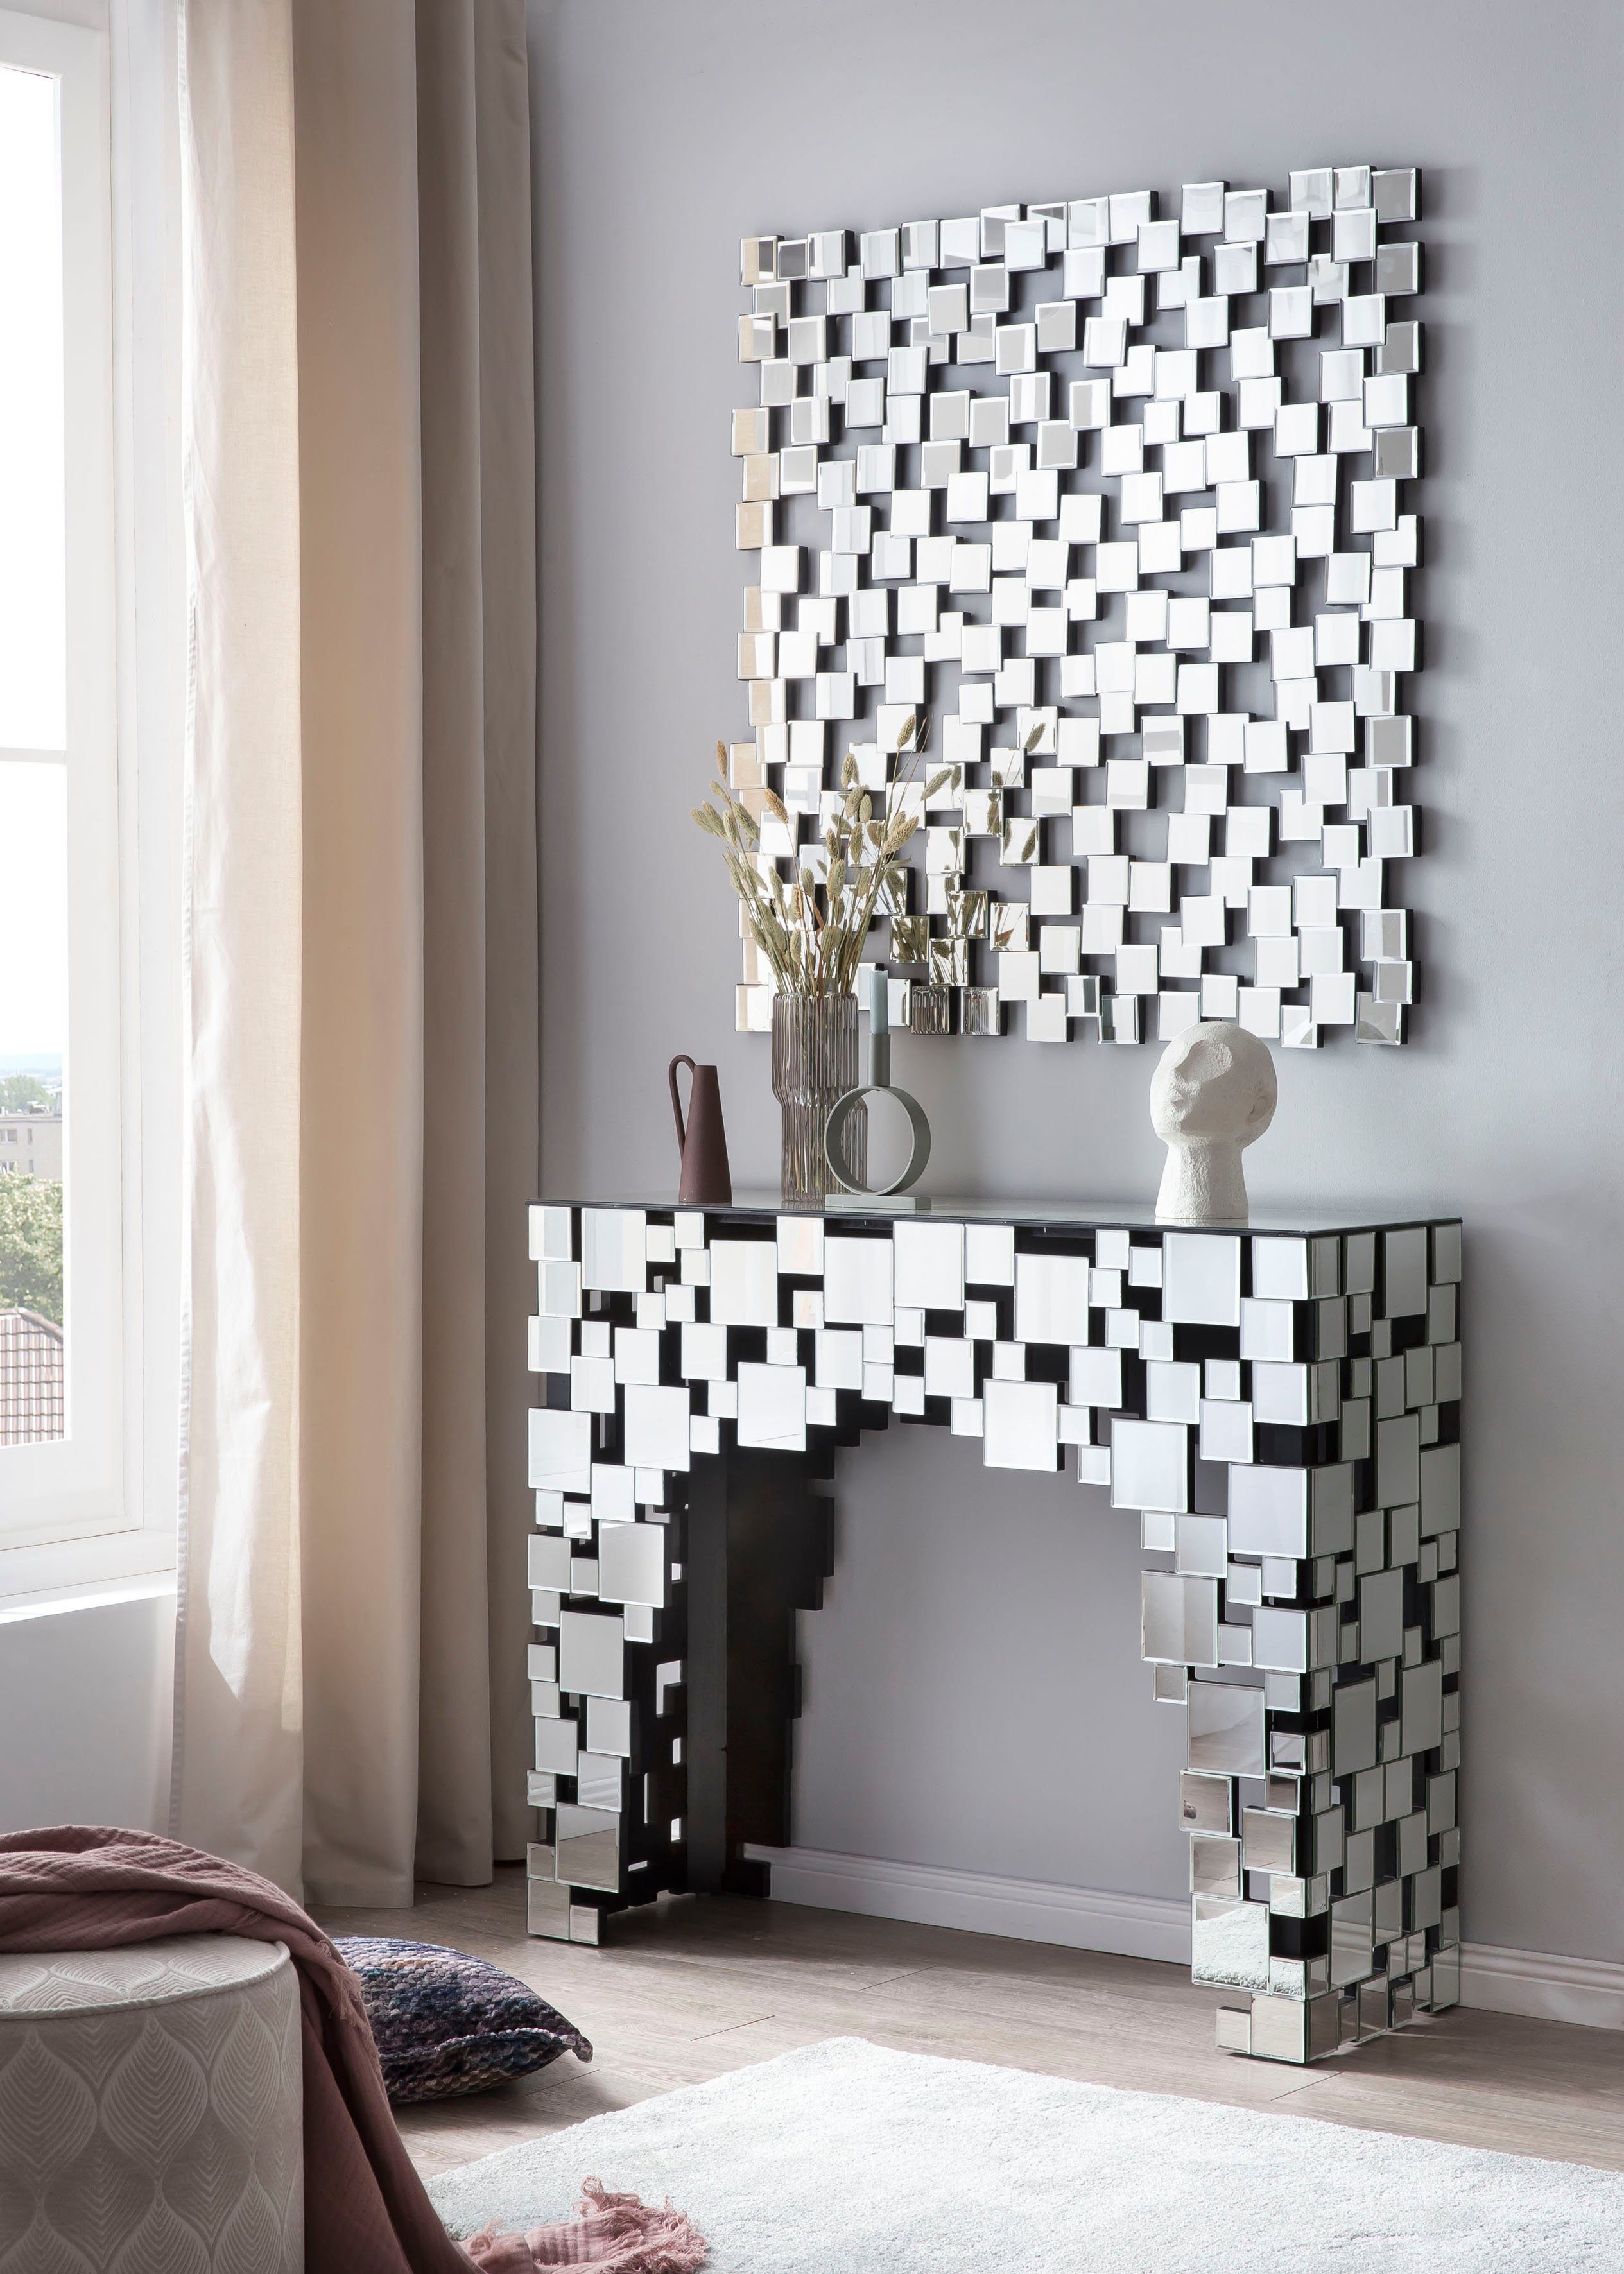 Spiegelglasquadraten aus Wandspiegel, Mosaikdesign SalesFever